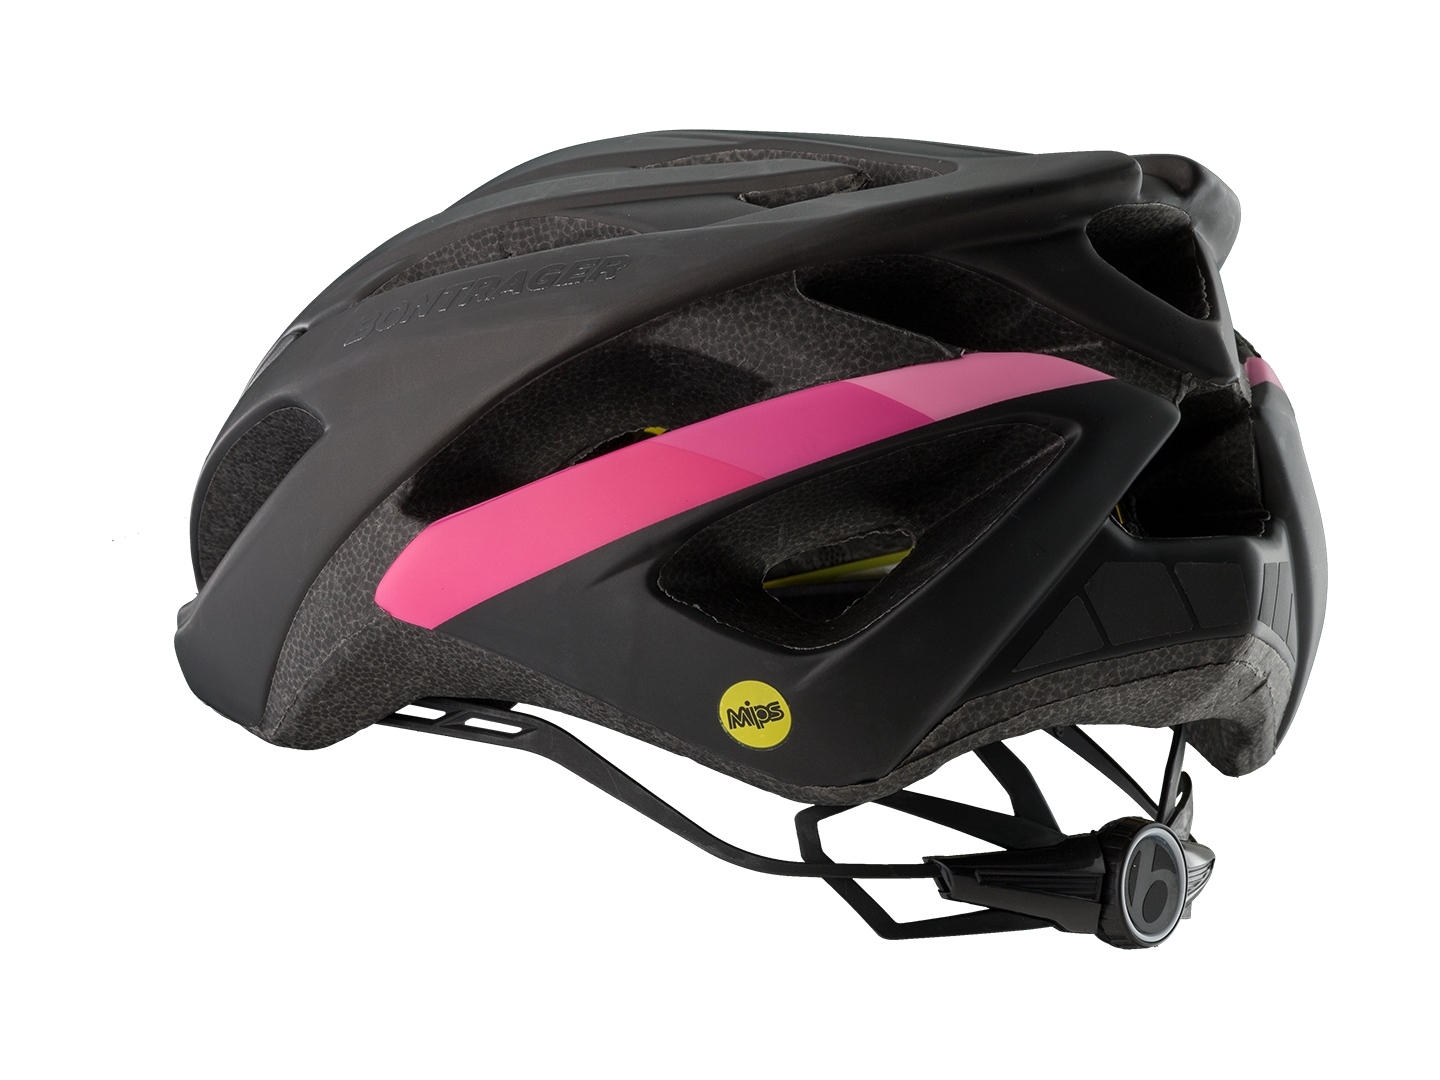 bontrager starvos mips road bike helmet review